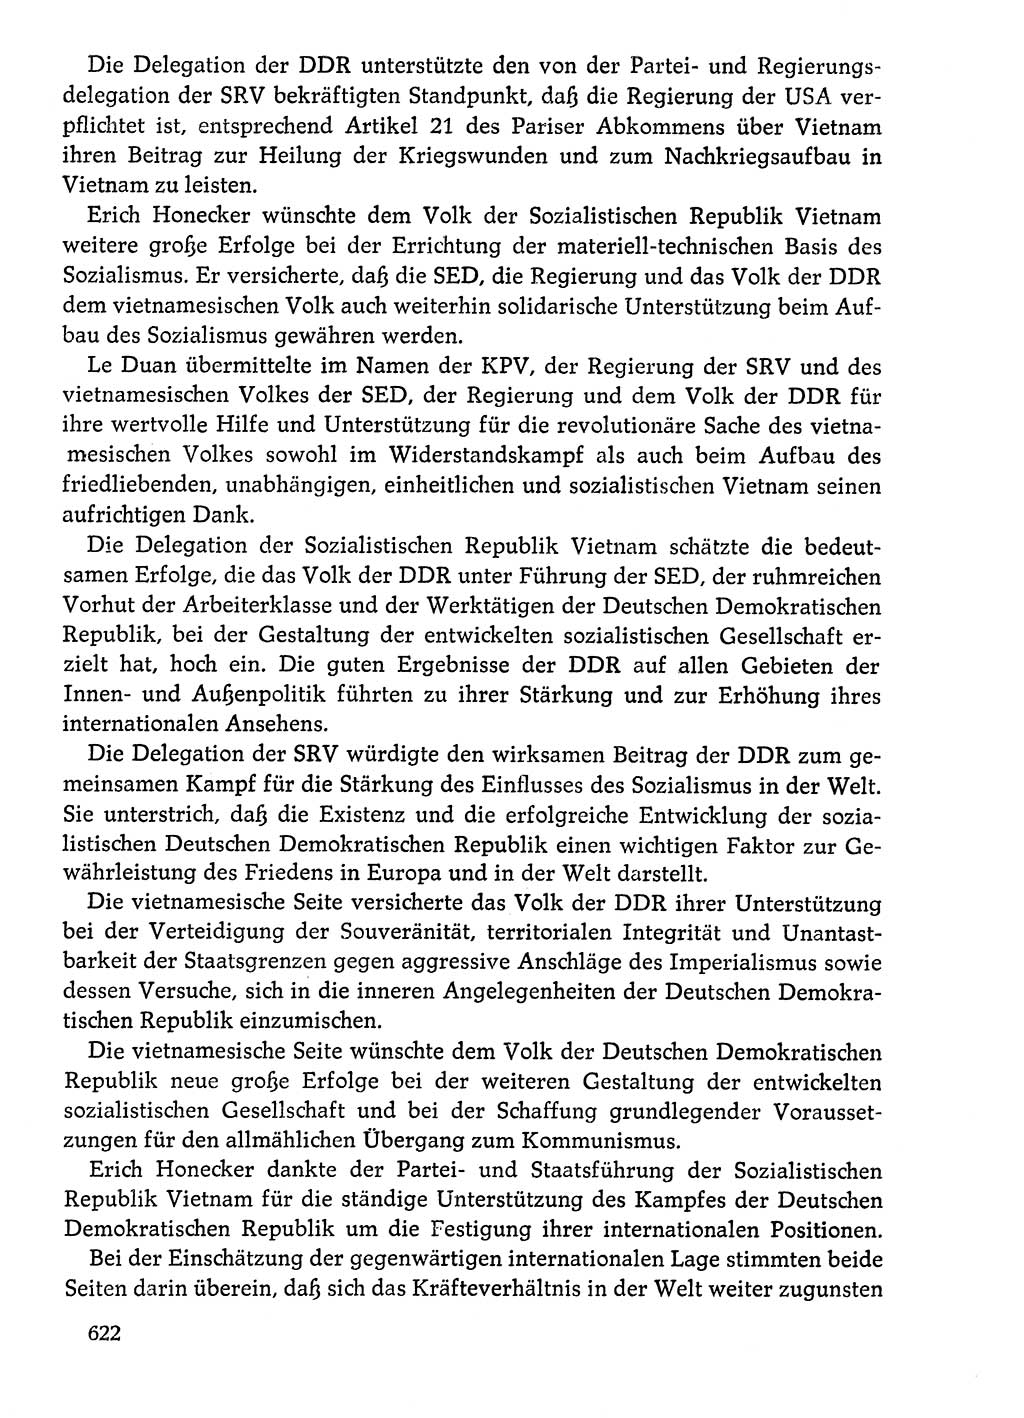 Dokumente der Sozialistischen Einheitspartei Deutschlands (SED) [Deutsche Demokratische Republik (DDR)] 1976-1977, Seite 622 (Dok. SED DDR 1976-1977, S. 622)